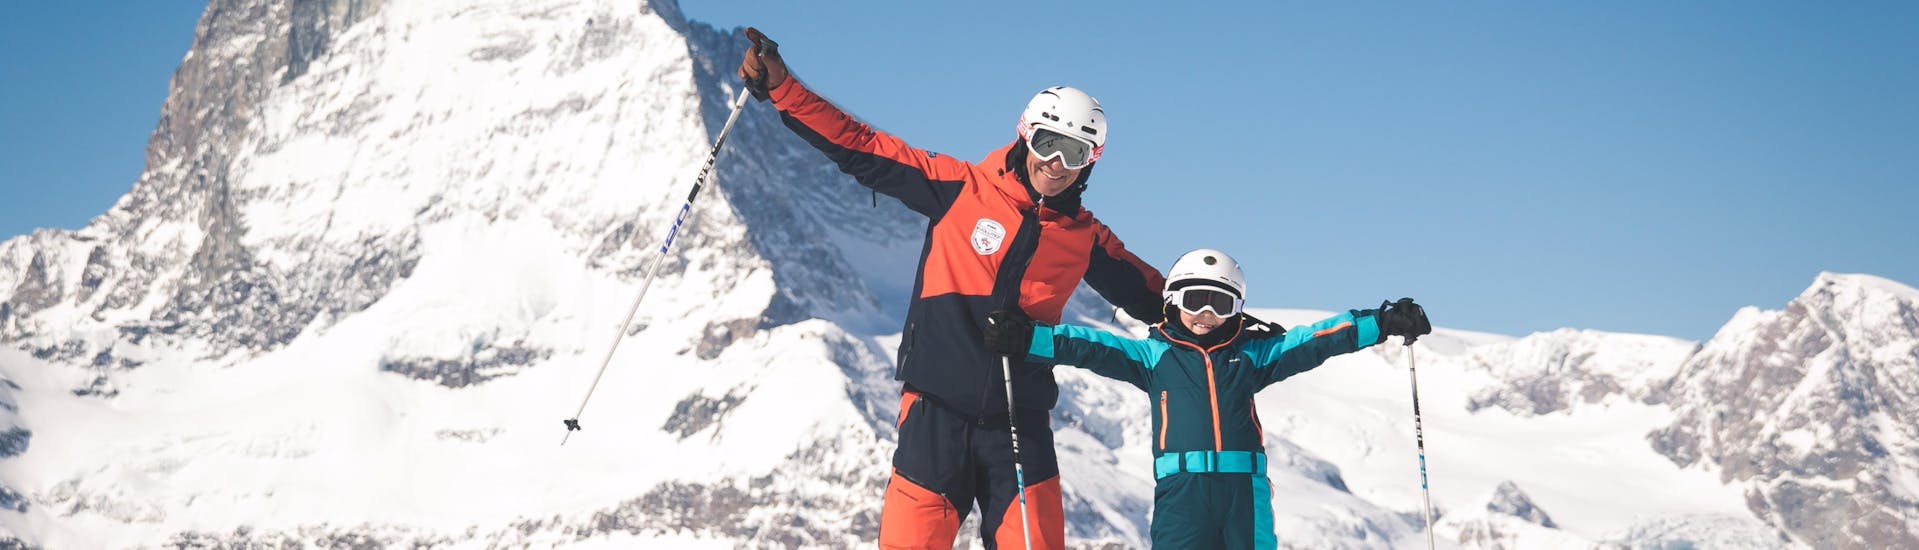 Un moniteur de ski et un enfant applaudissent aux leçons de ski pour enfants (6-11 ans) pour tous les niveaux.